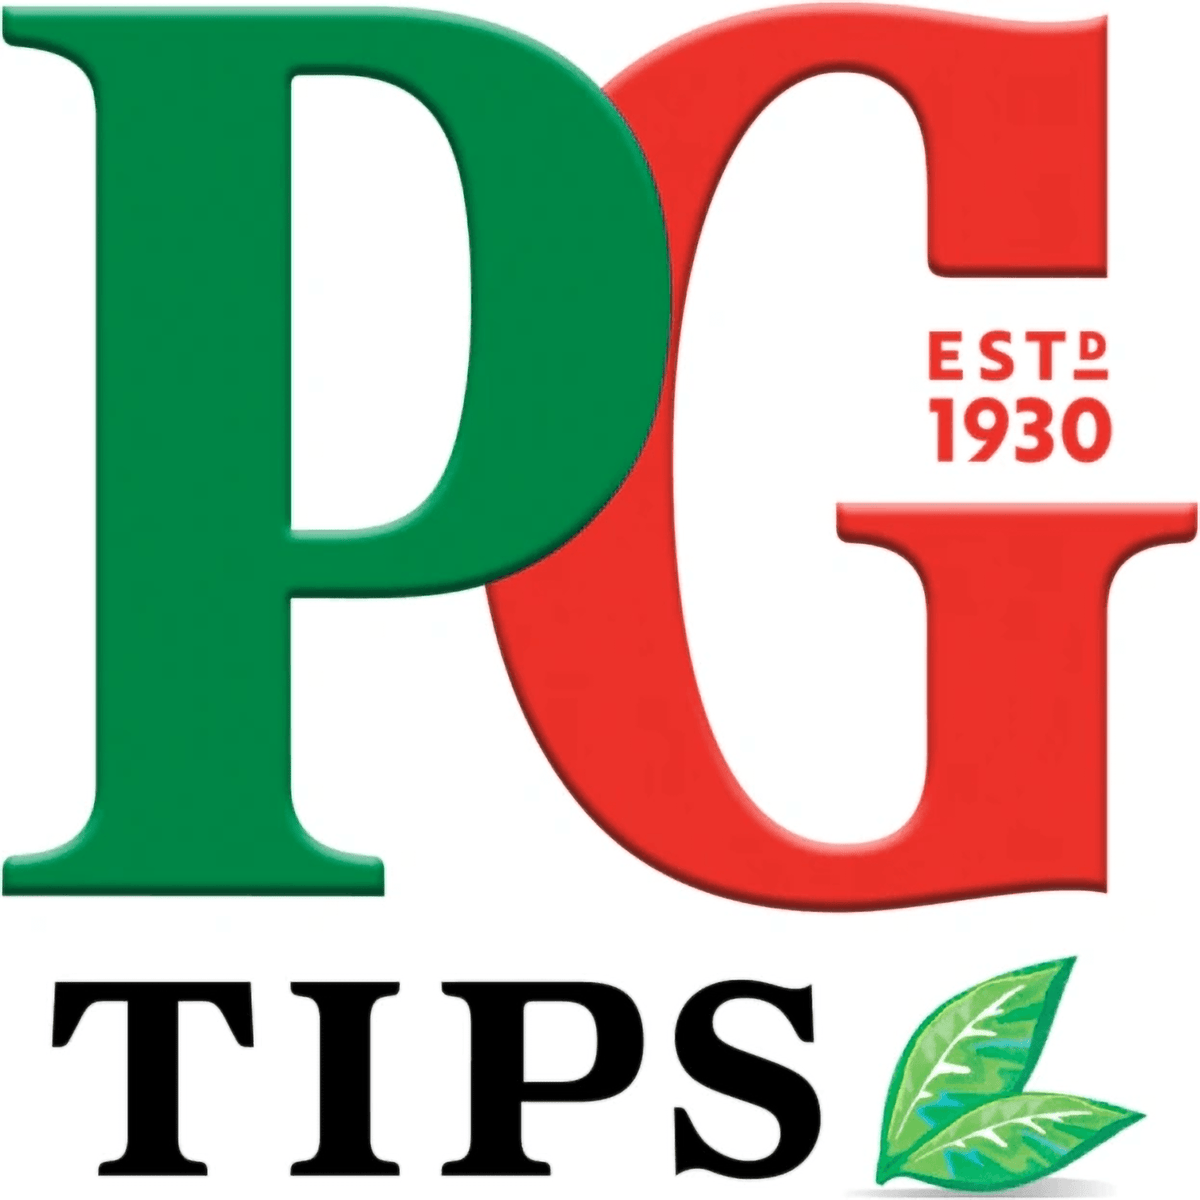 British Tea in Canada - PG Tips